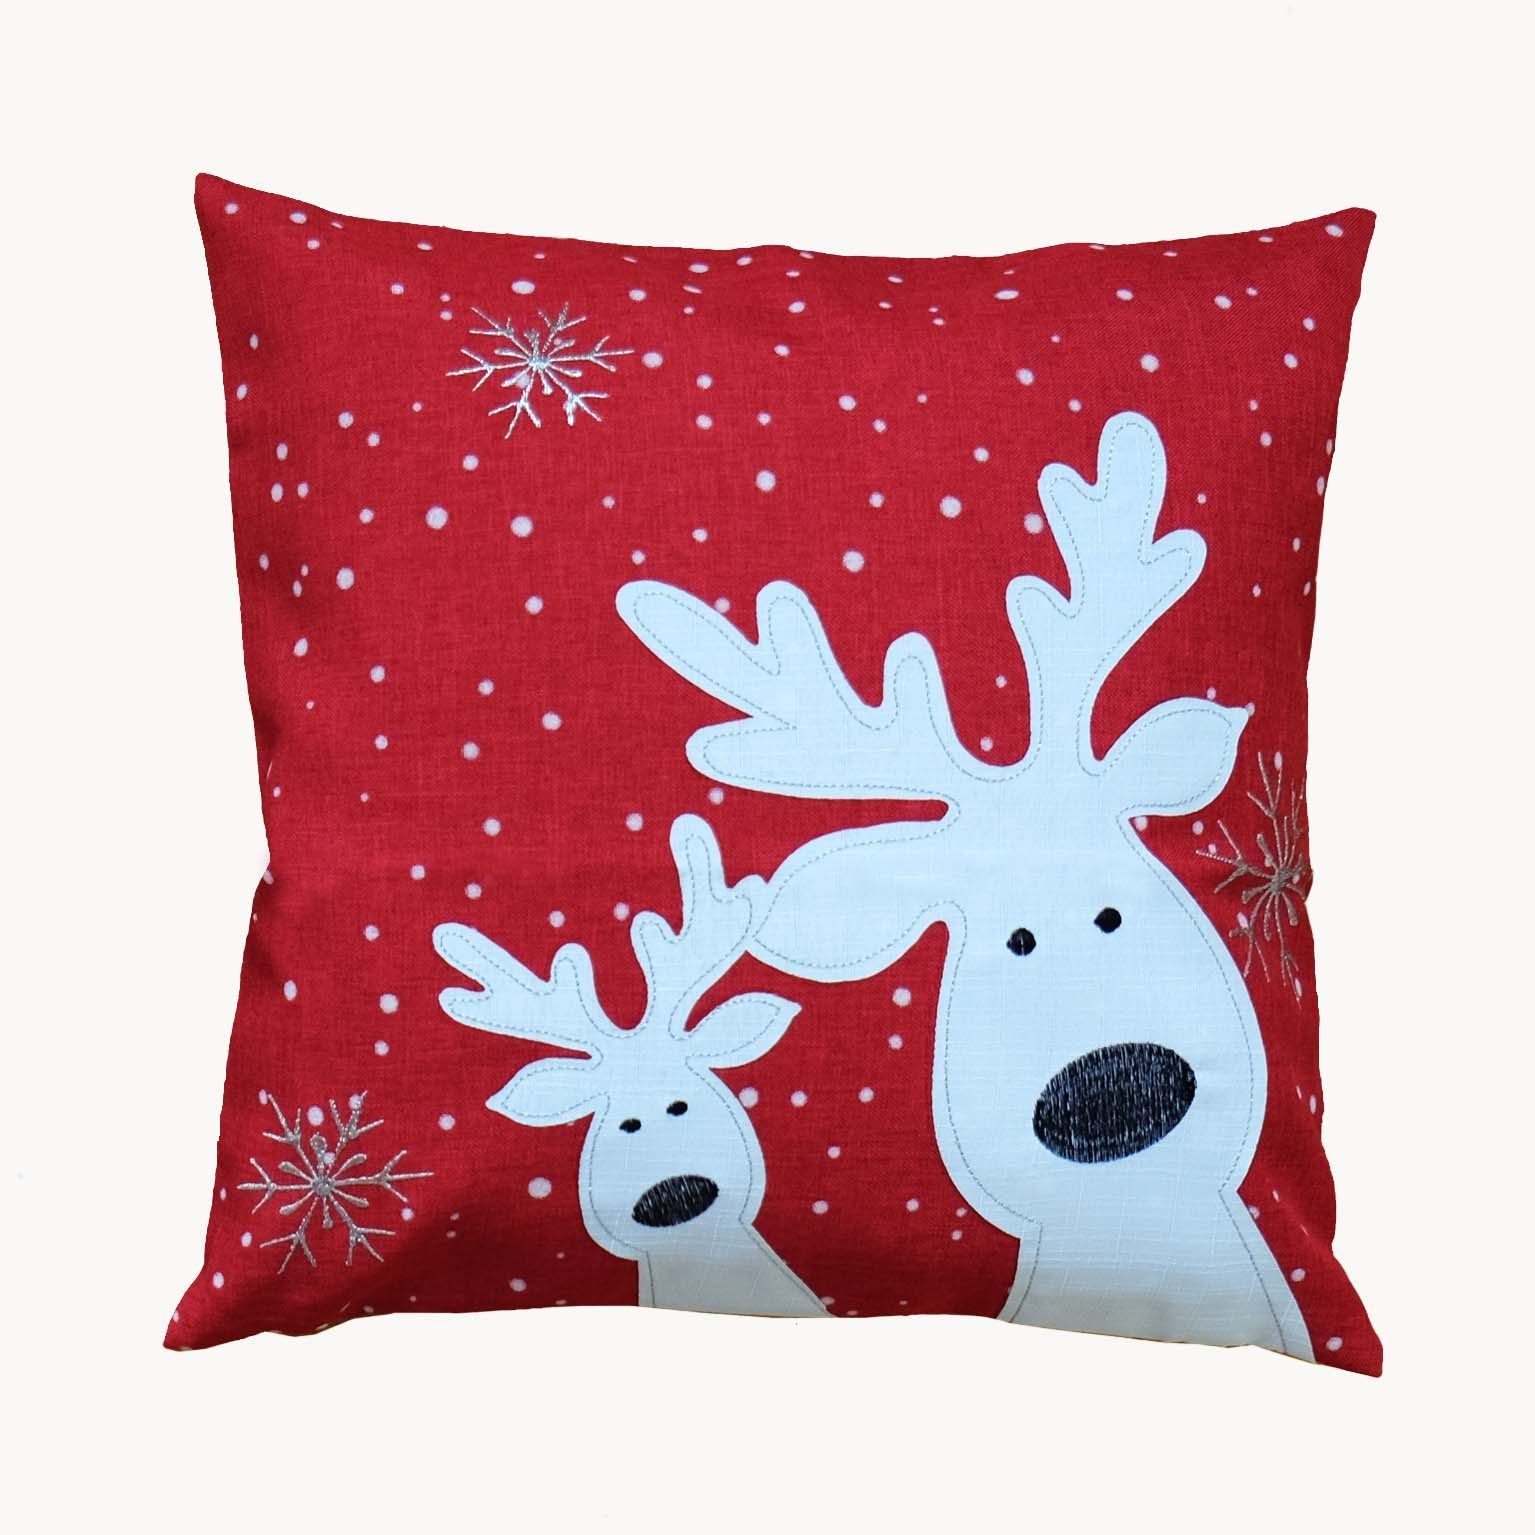 Kissenhülle mit verschiedenen Motiven Advent Weihnachten Winter, TextilDepot24, mit Reißverschluss rot